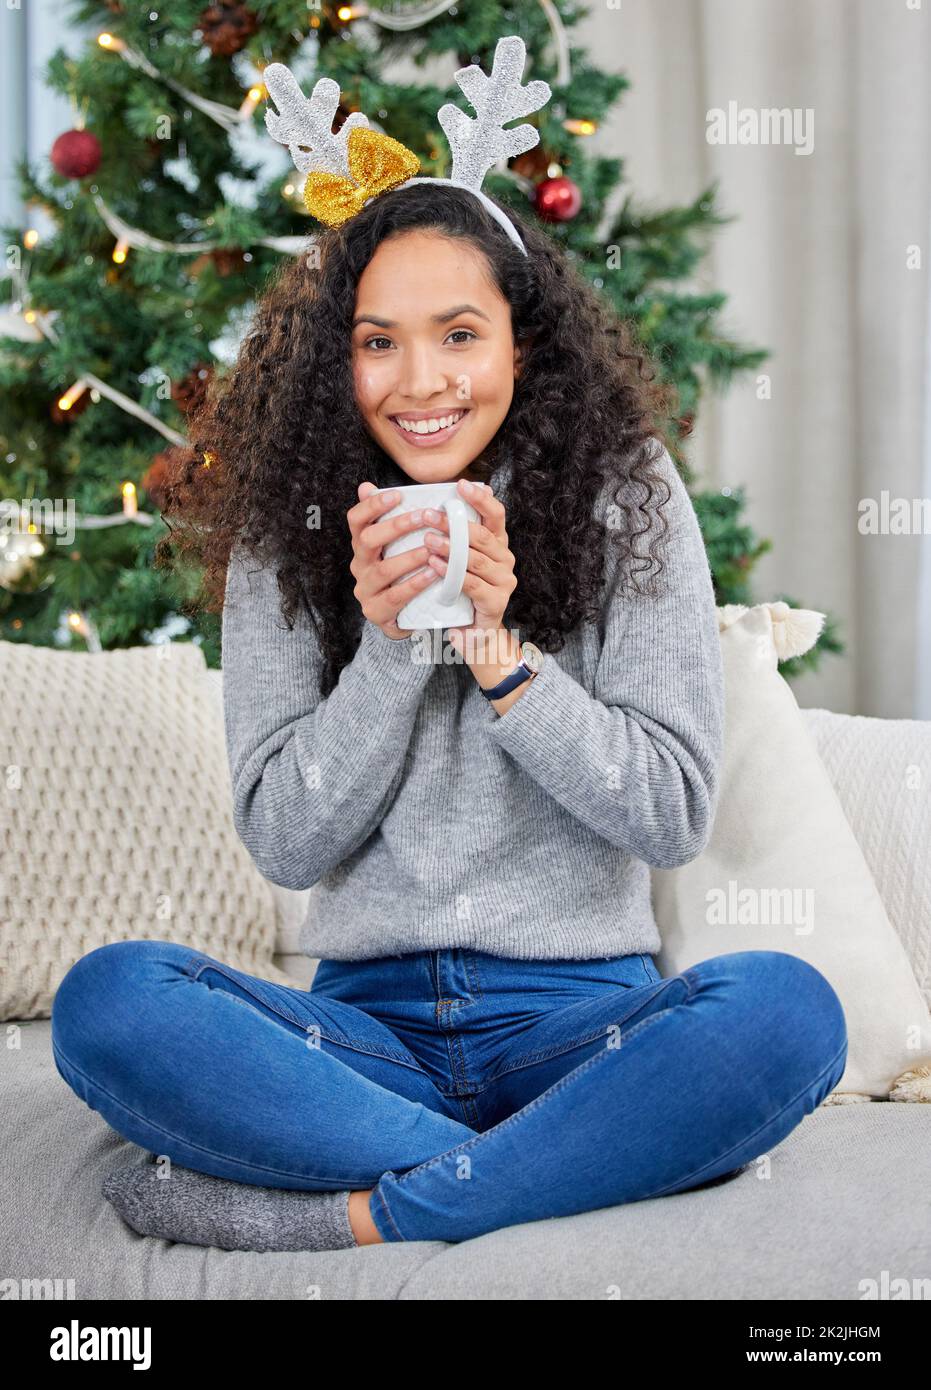 Zu Hause gemütlich machen. Aufnahme einer jungen Frau, die während der Weihnachtszeit zu Hause Kaffee trinkt. Stockfoto